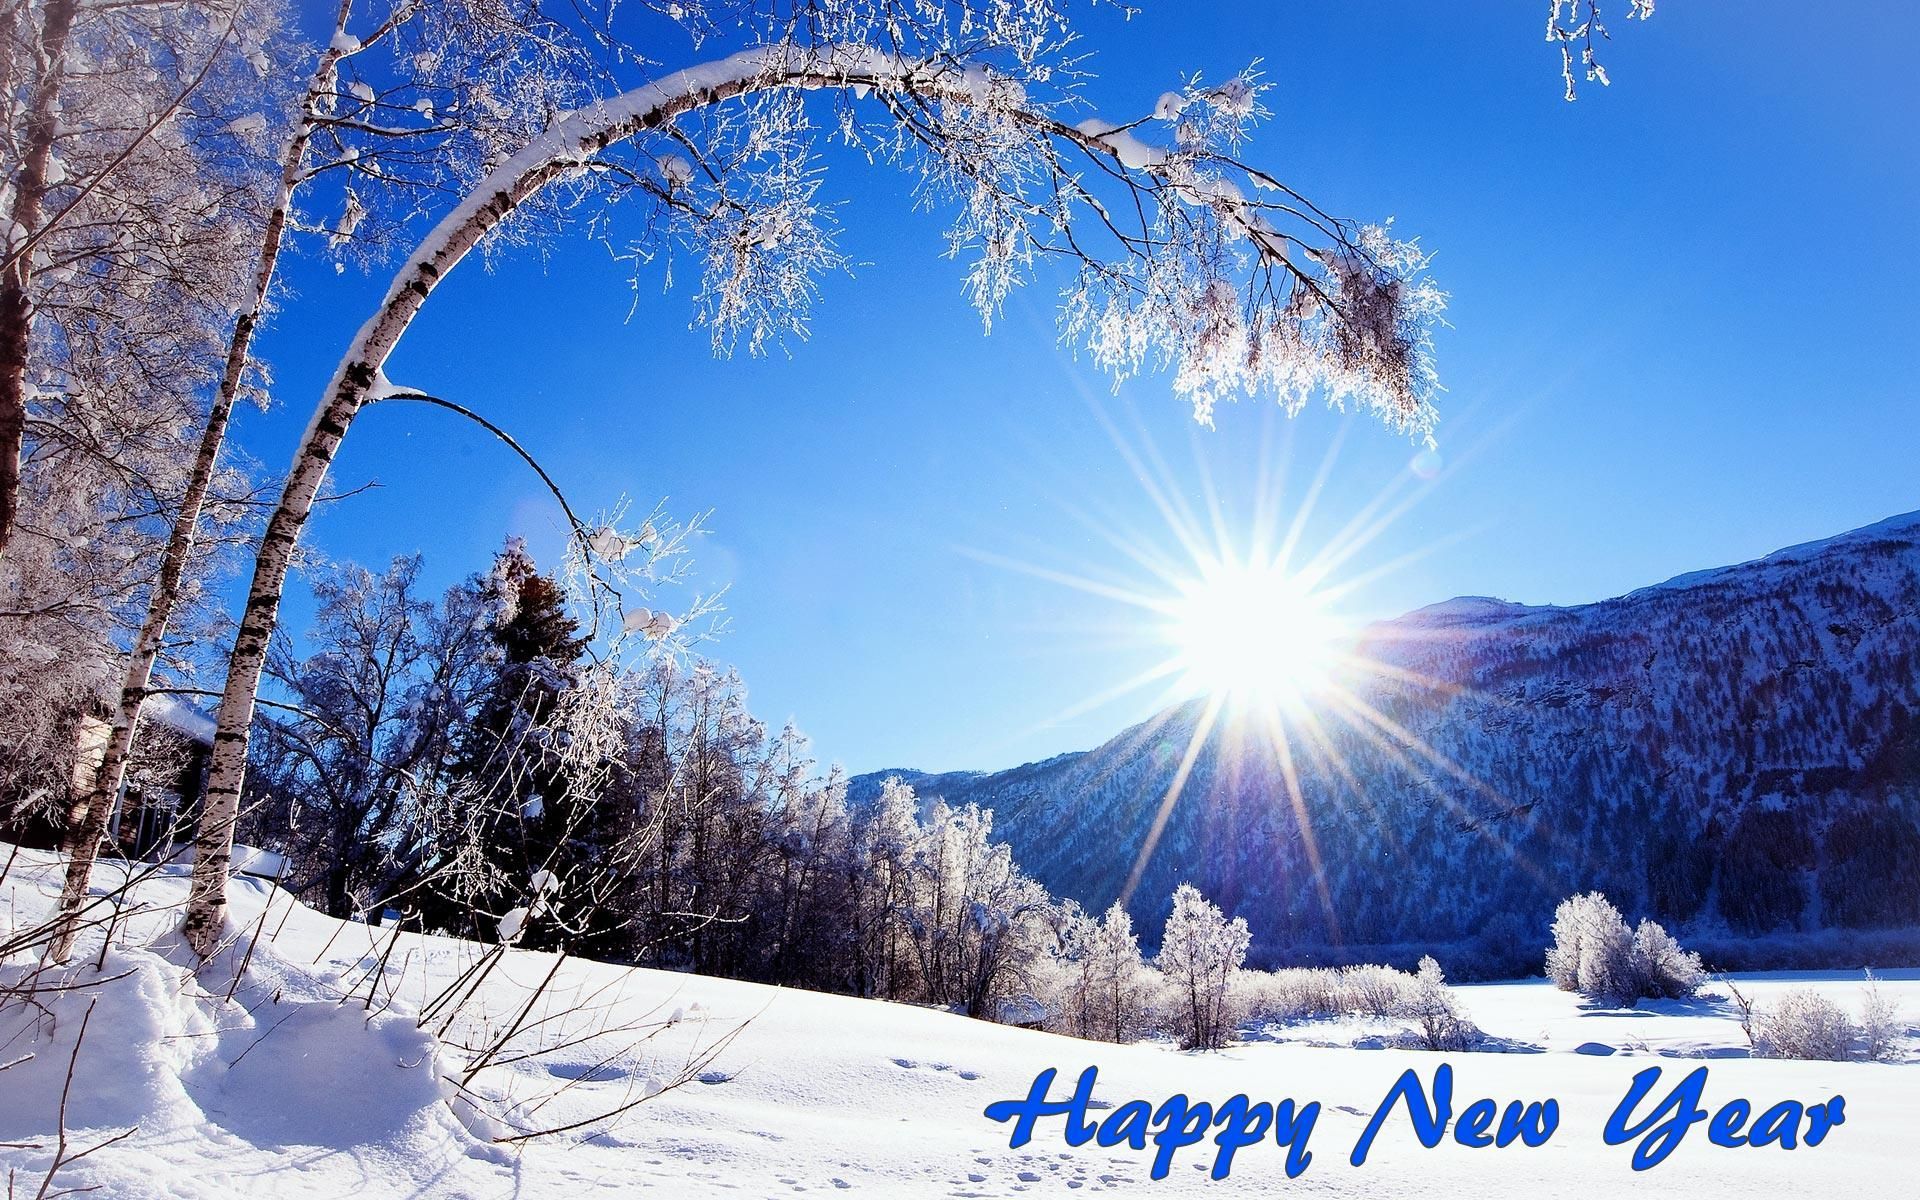 Happy New Year HD Wallpaper. Winter scenery, Winter snow wallpaper, Winter landscape